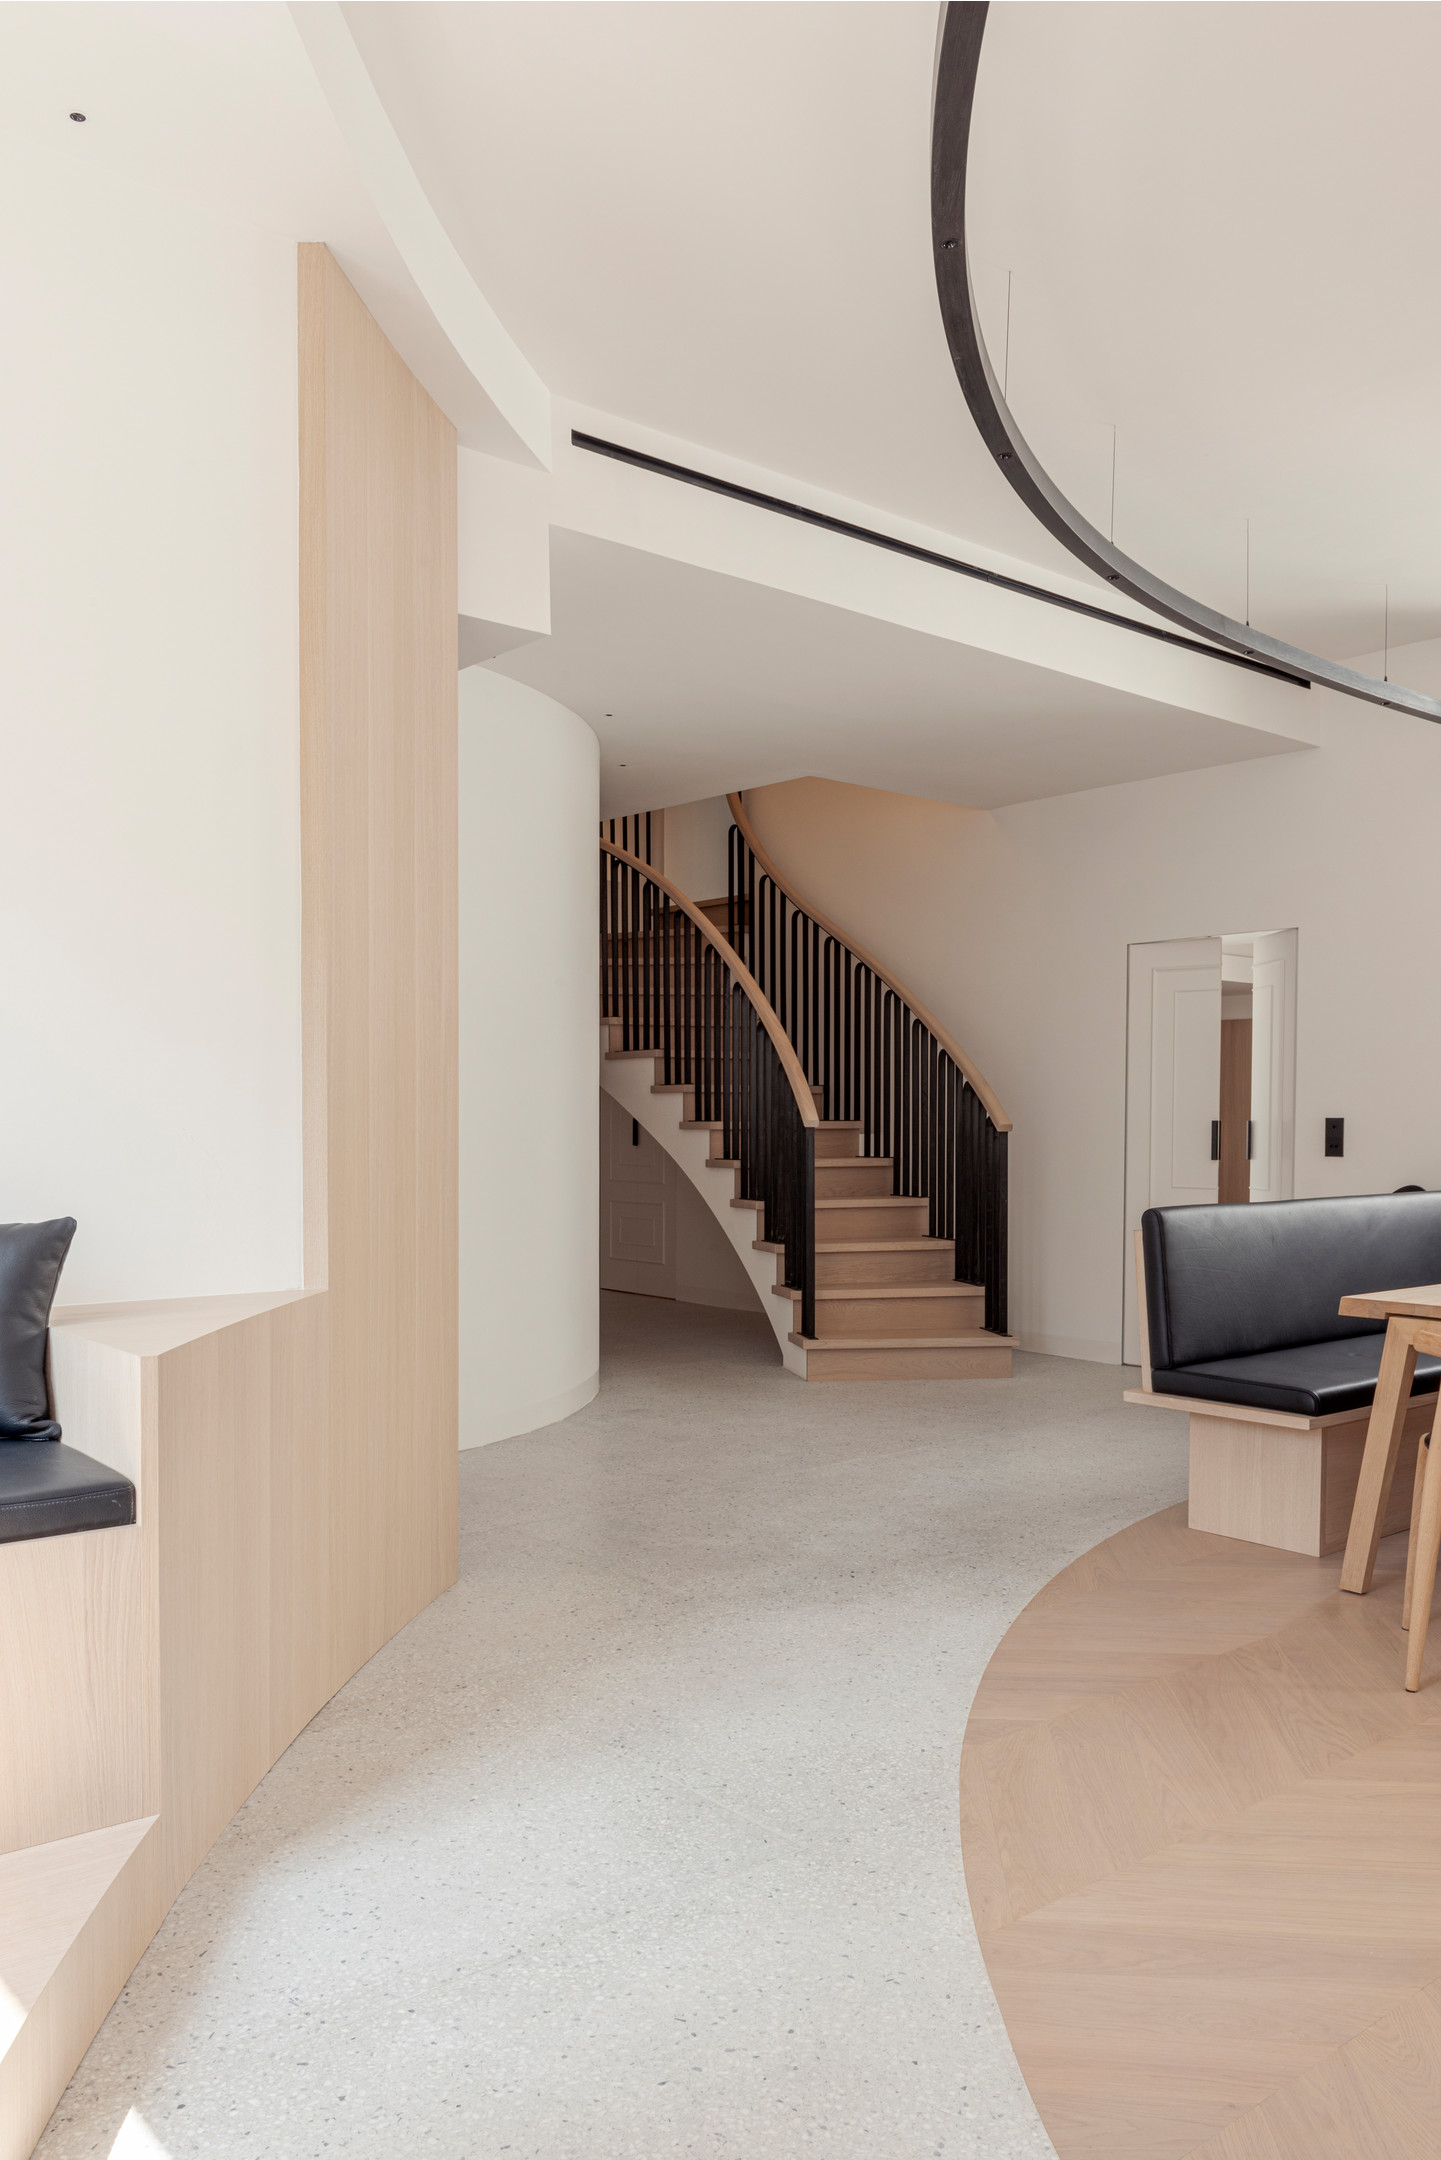 Cầu thang gỗ với lan can màu đen chuyển tiếp giữa 2 tầng được xem là điểm nhấn giữa không gian phủ đầy sắc màu trung tính. Tầng trên thiết kế gồm phòng sinh hoạt chung, phòng ngủ chính, phòng ngủ cho khách và phòng tắm.